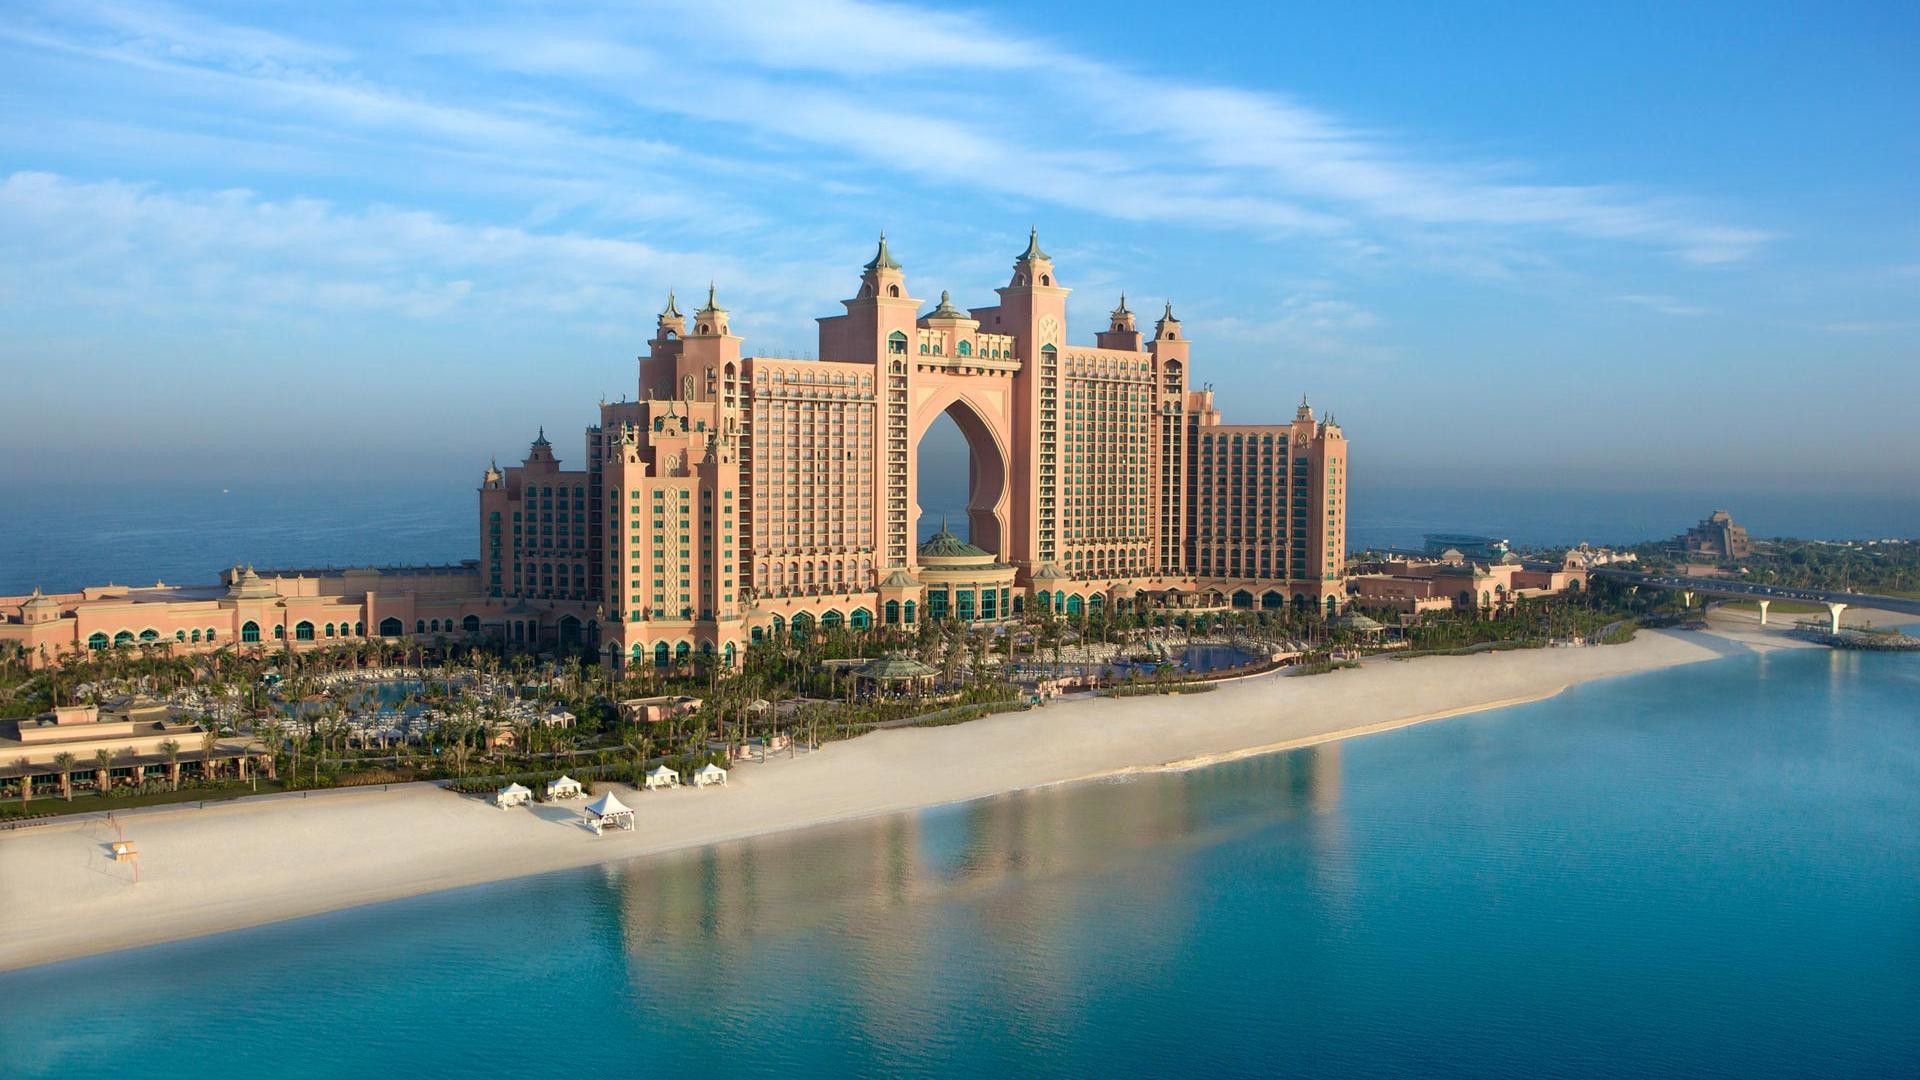 1920x1080 Atlantis Dubai Hotel City